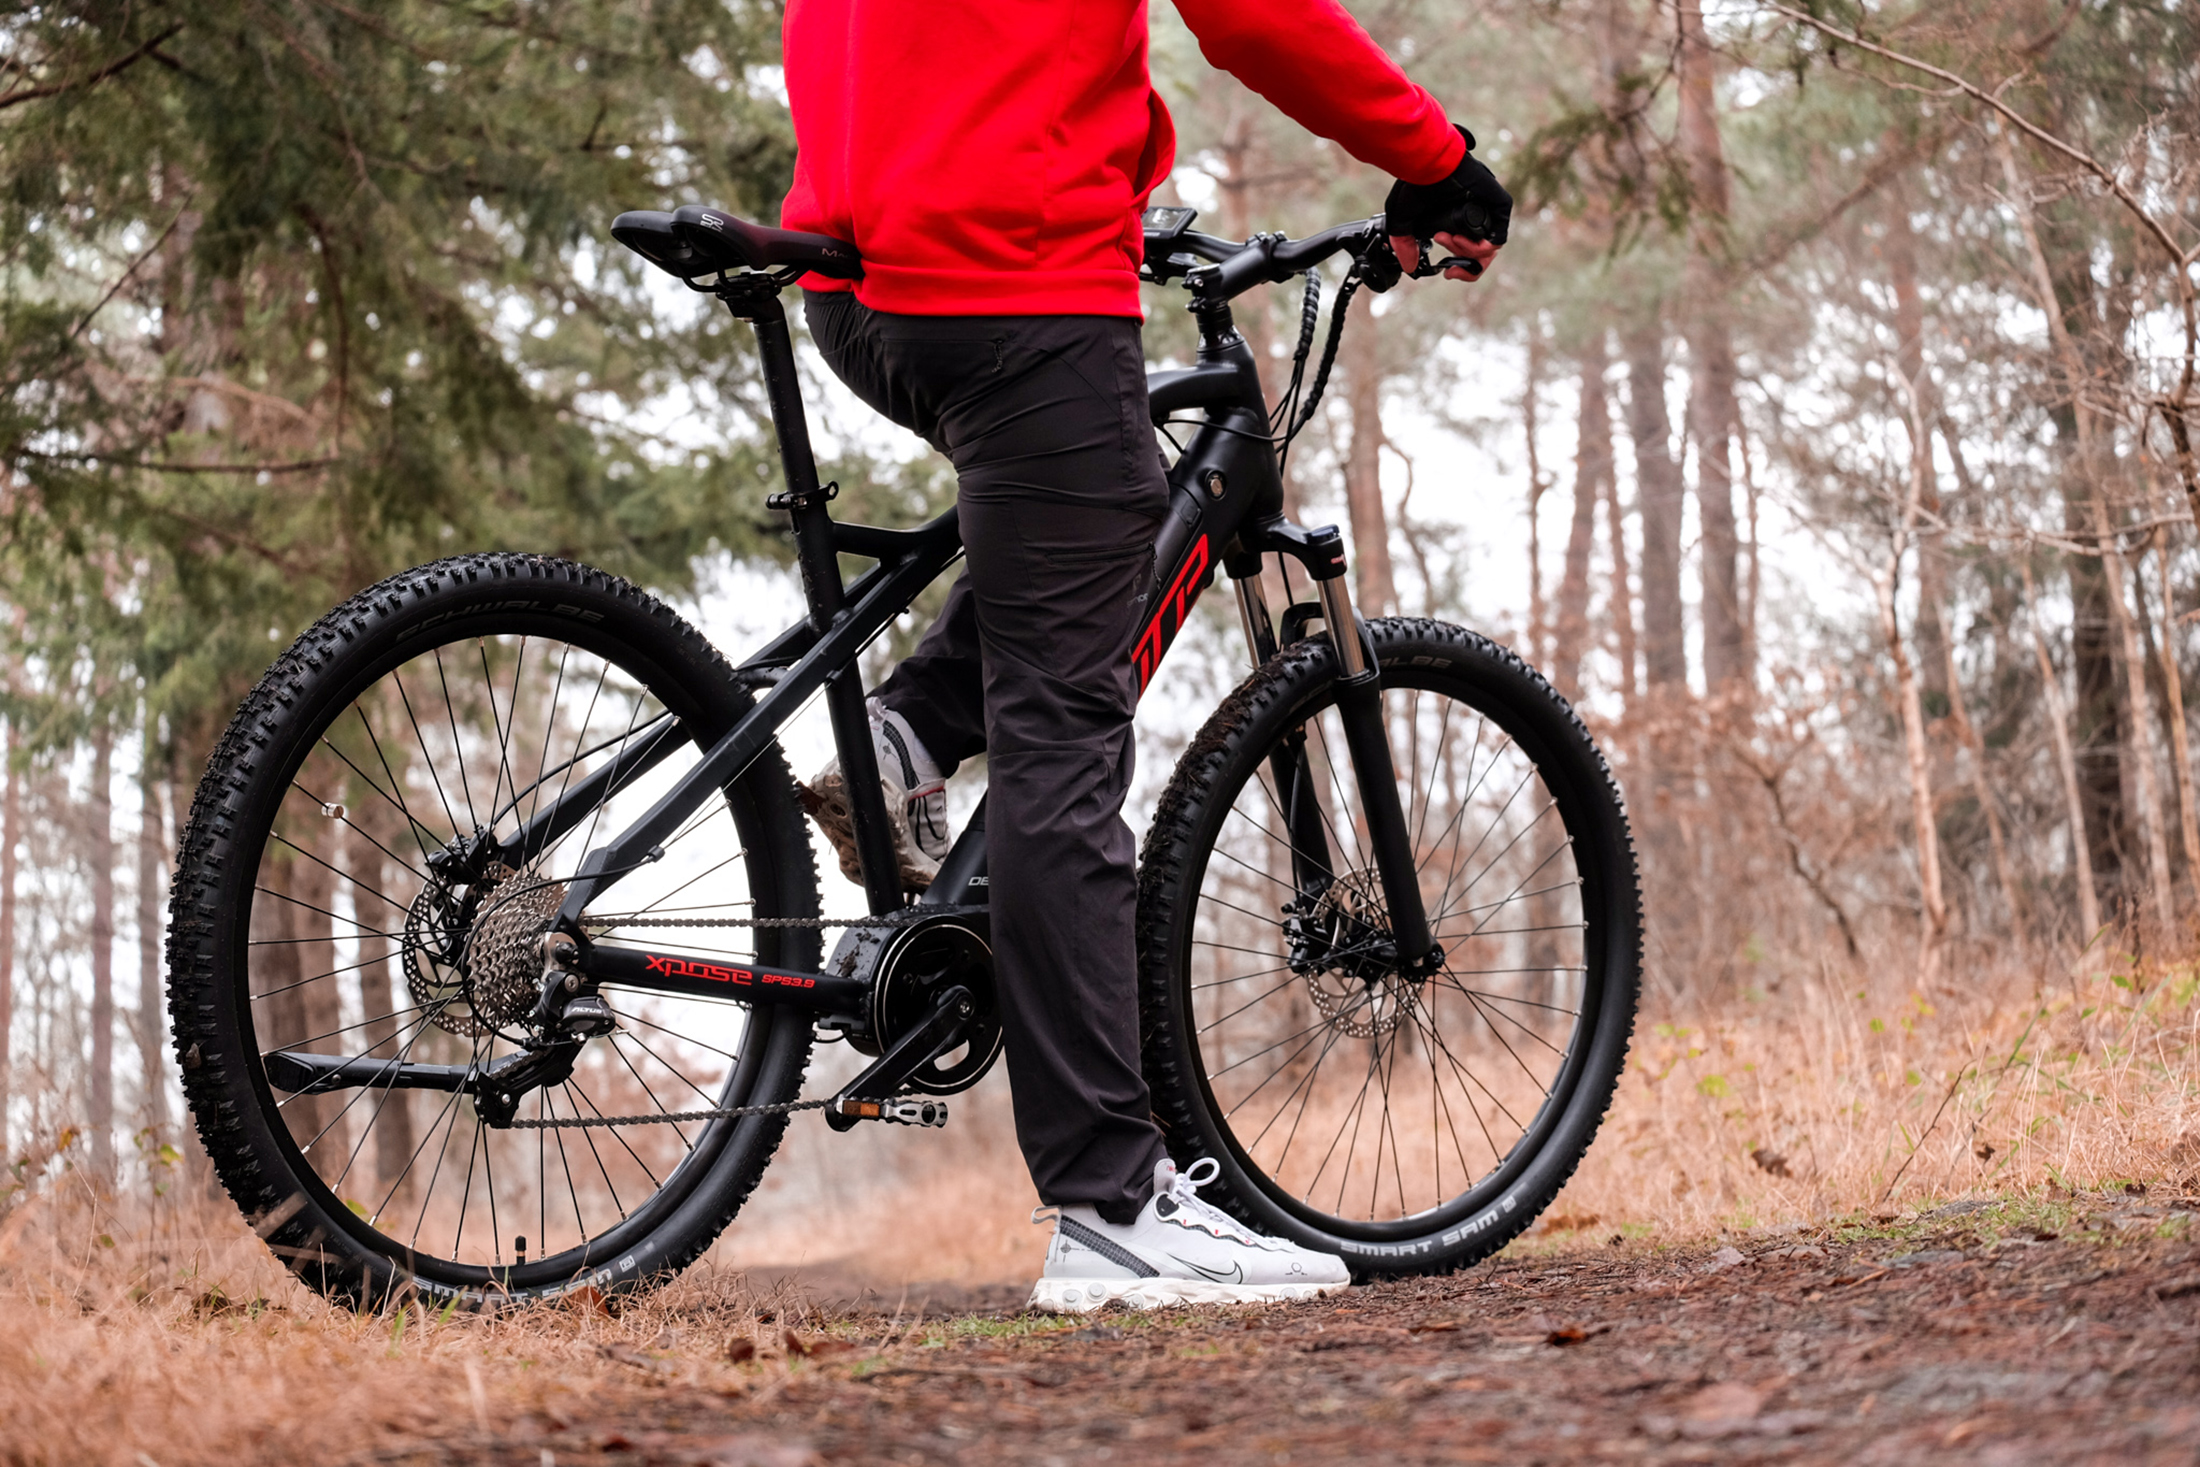 ADORE Xpose Mountainbike (Laufradgröße: Rahmenhöhe: Schwarz) Zoll, Herren-Rad, 51 504 Wh, 27,5 cm